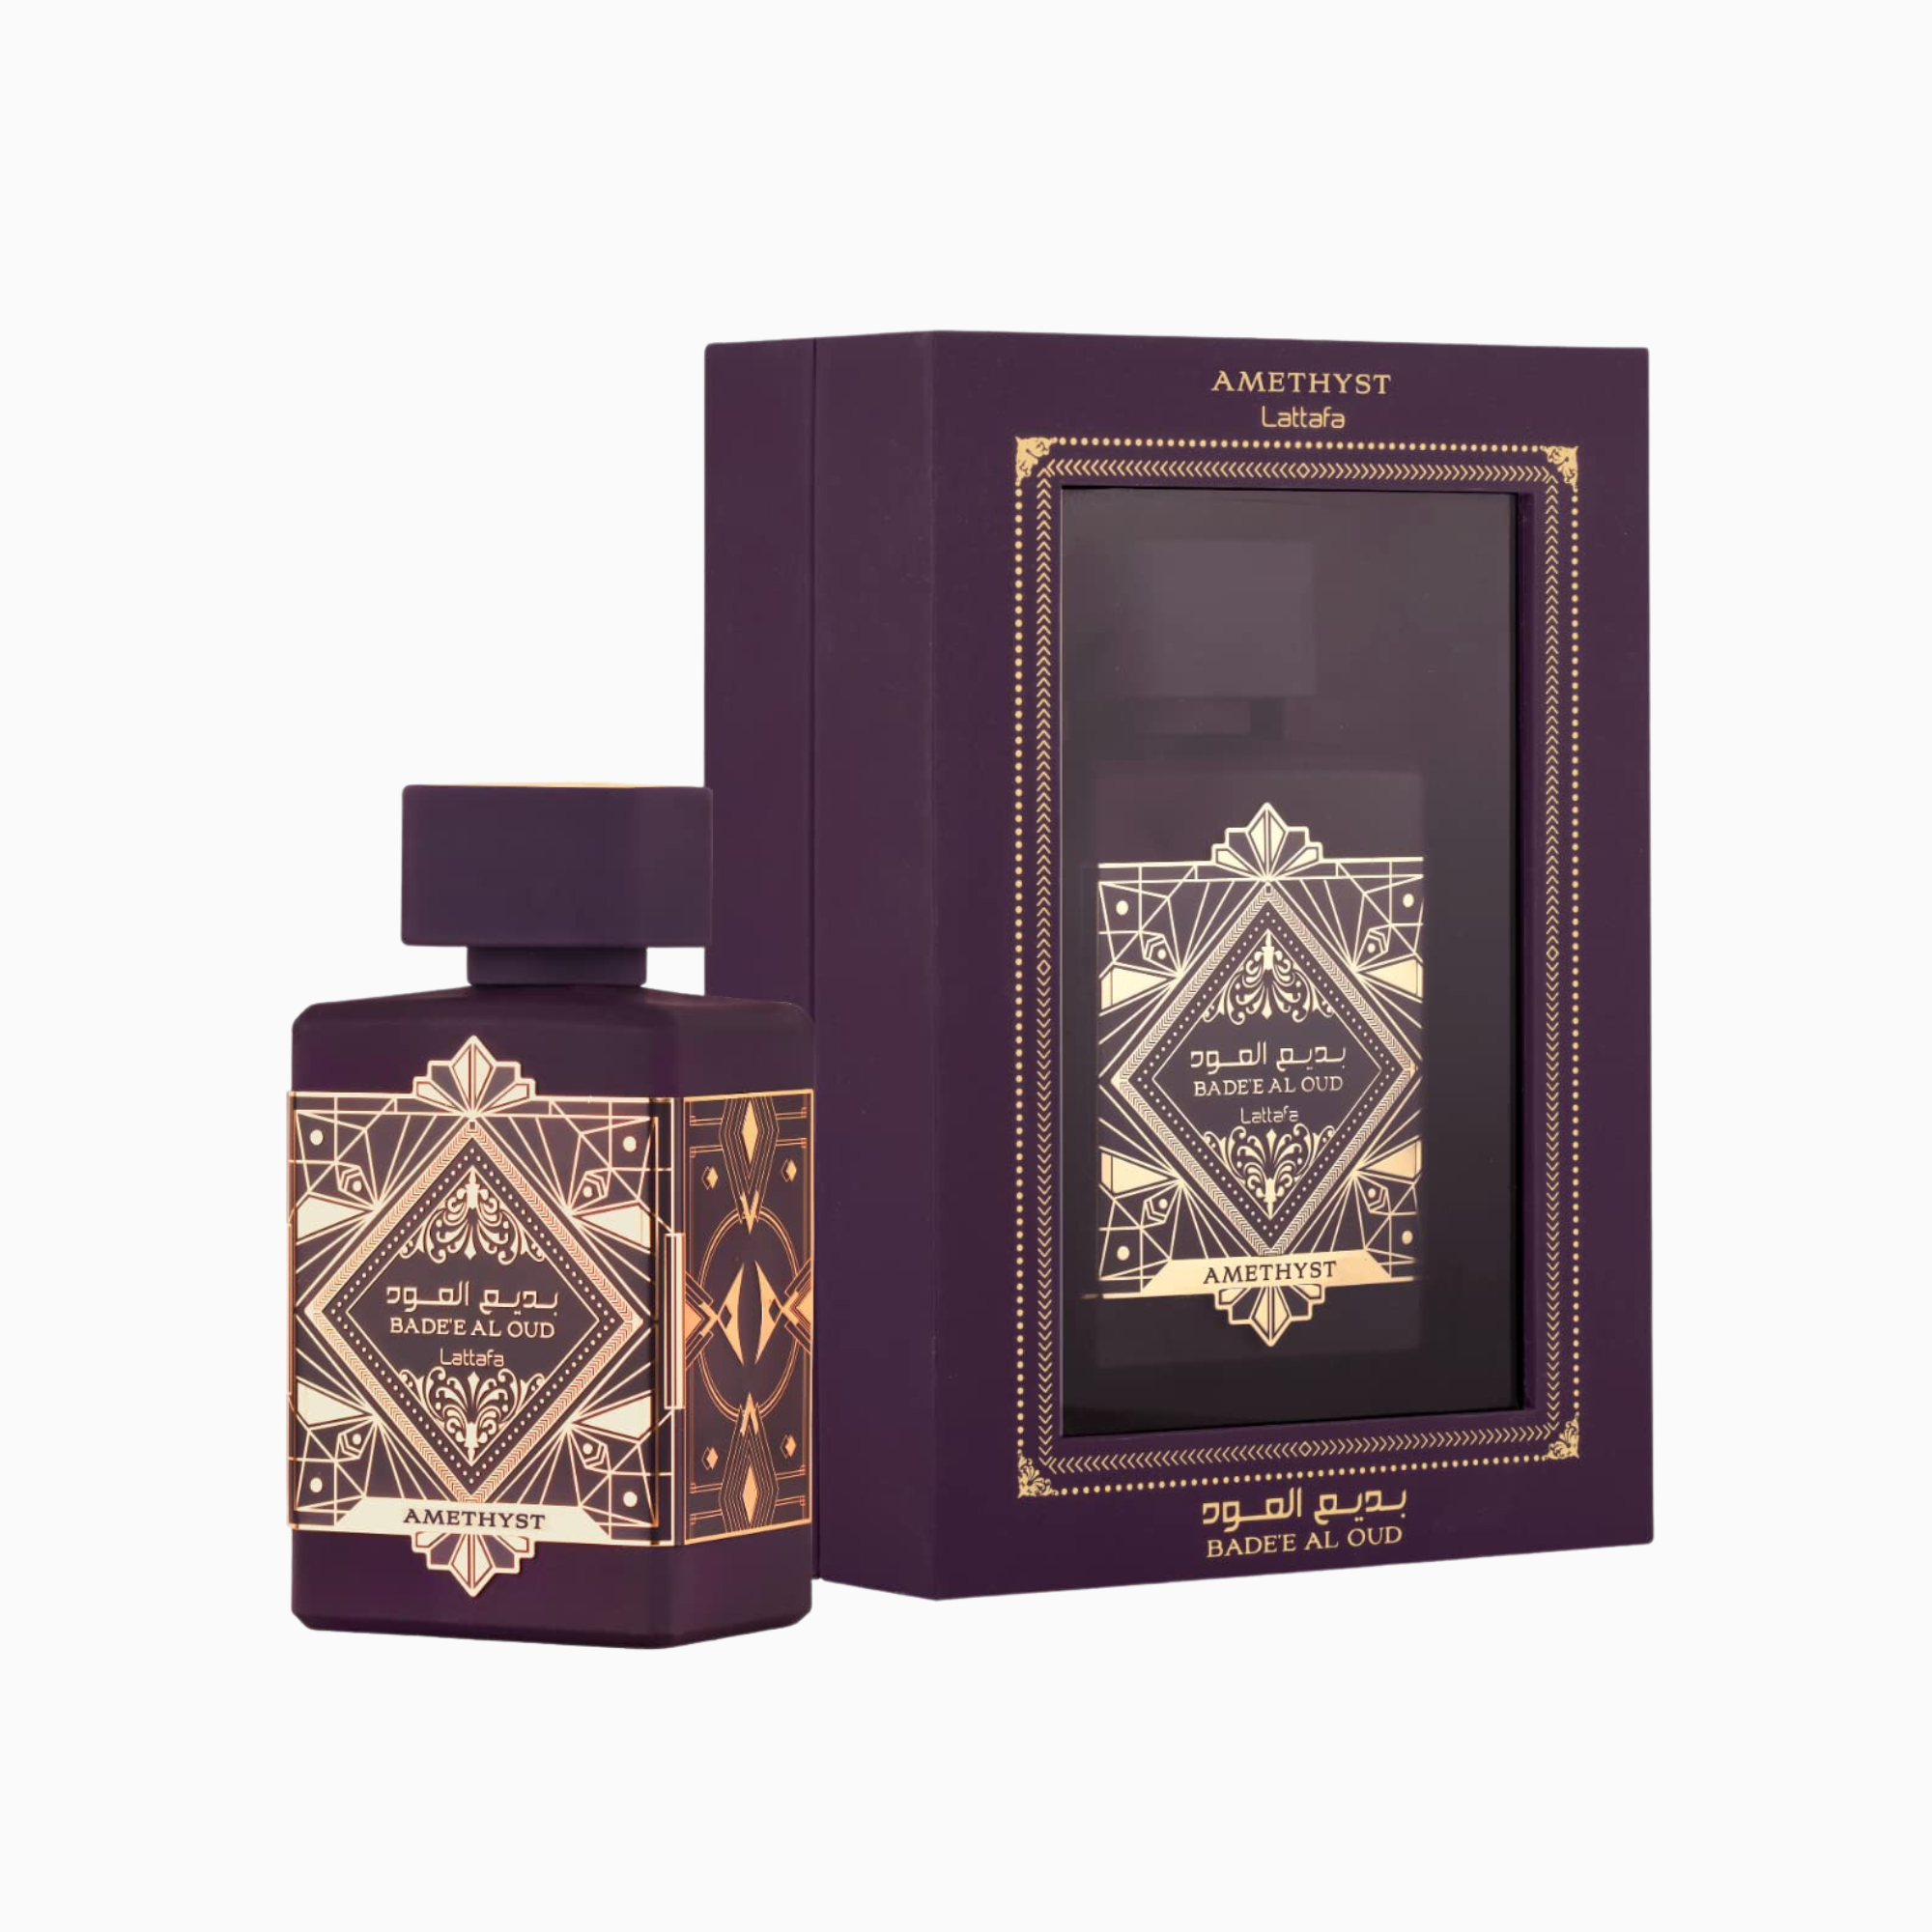 badee-al-oud-amethyst-by-lattafa-edp-spray-3-4-oz-perfume-6291108733875